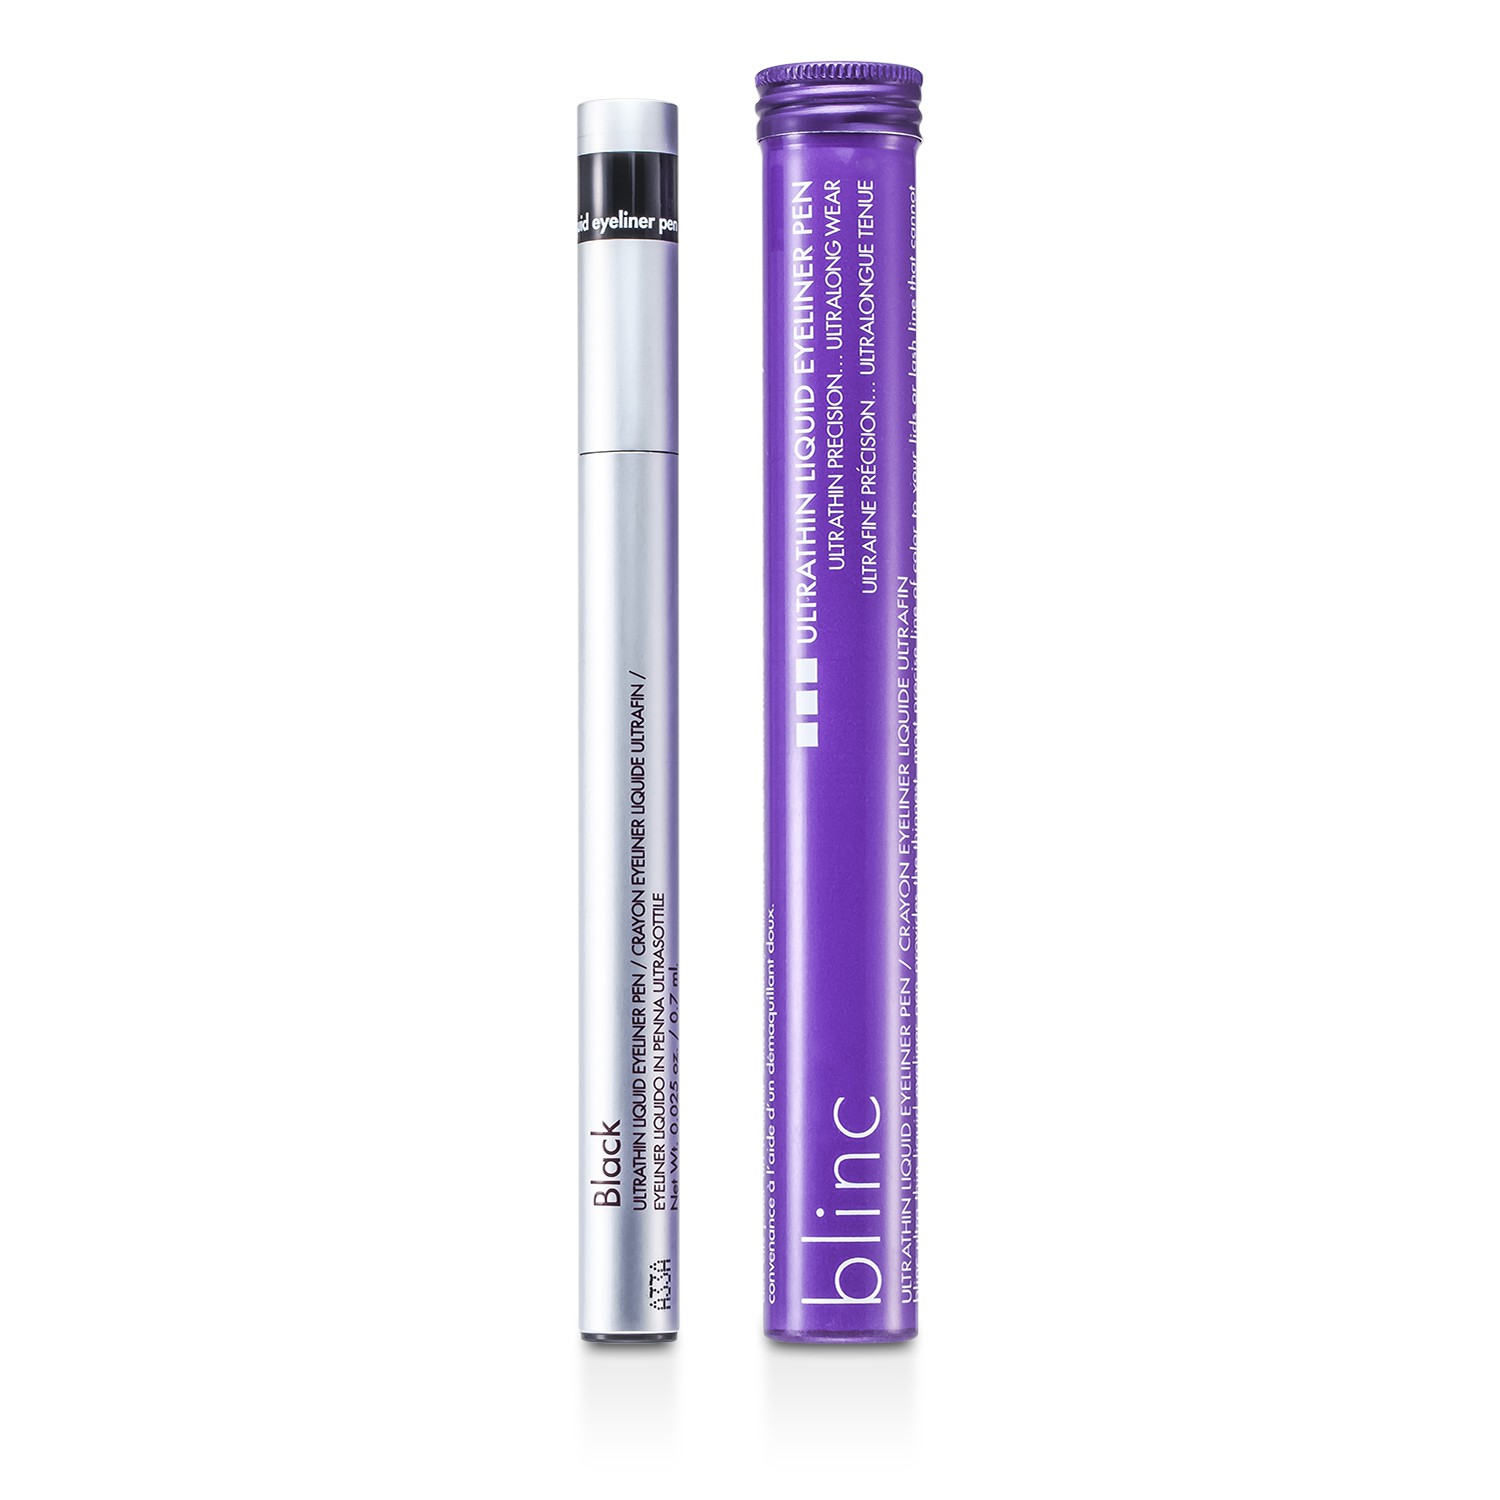 Blinc Ultrathin Liquid Eyeliner Pen 0.7ml/0.025oz